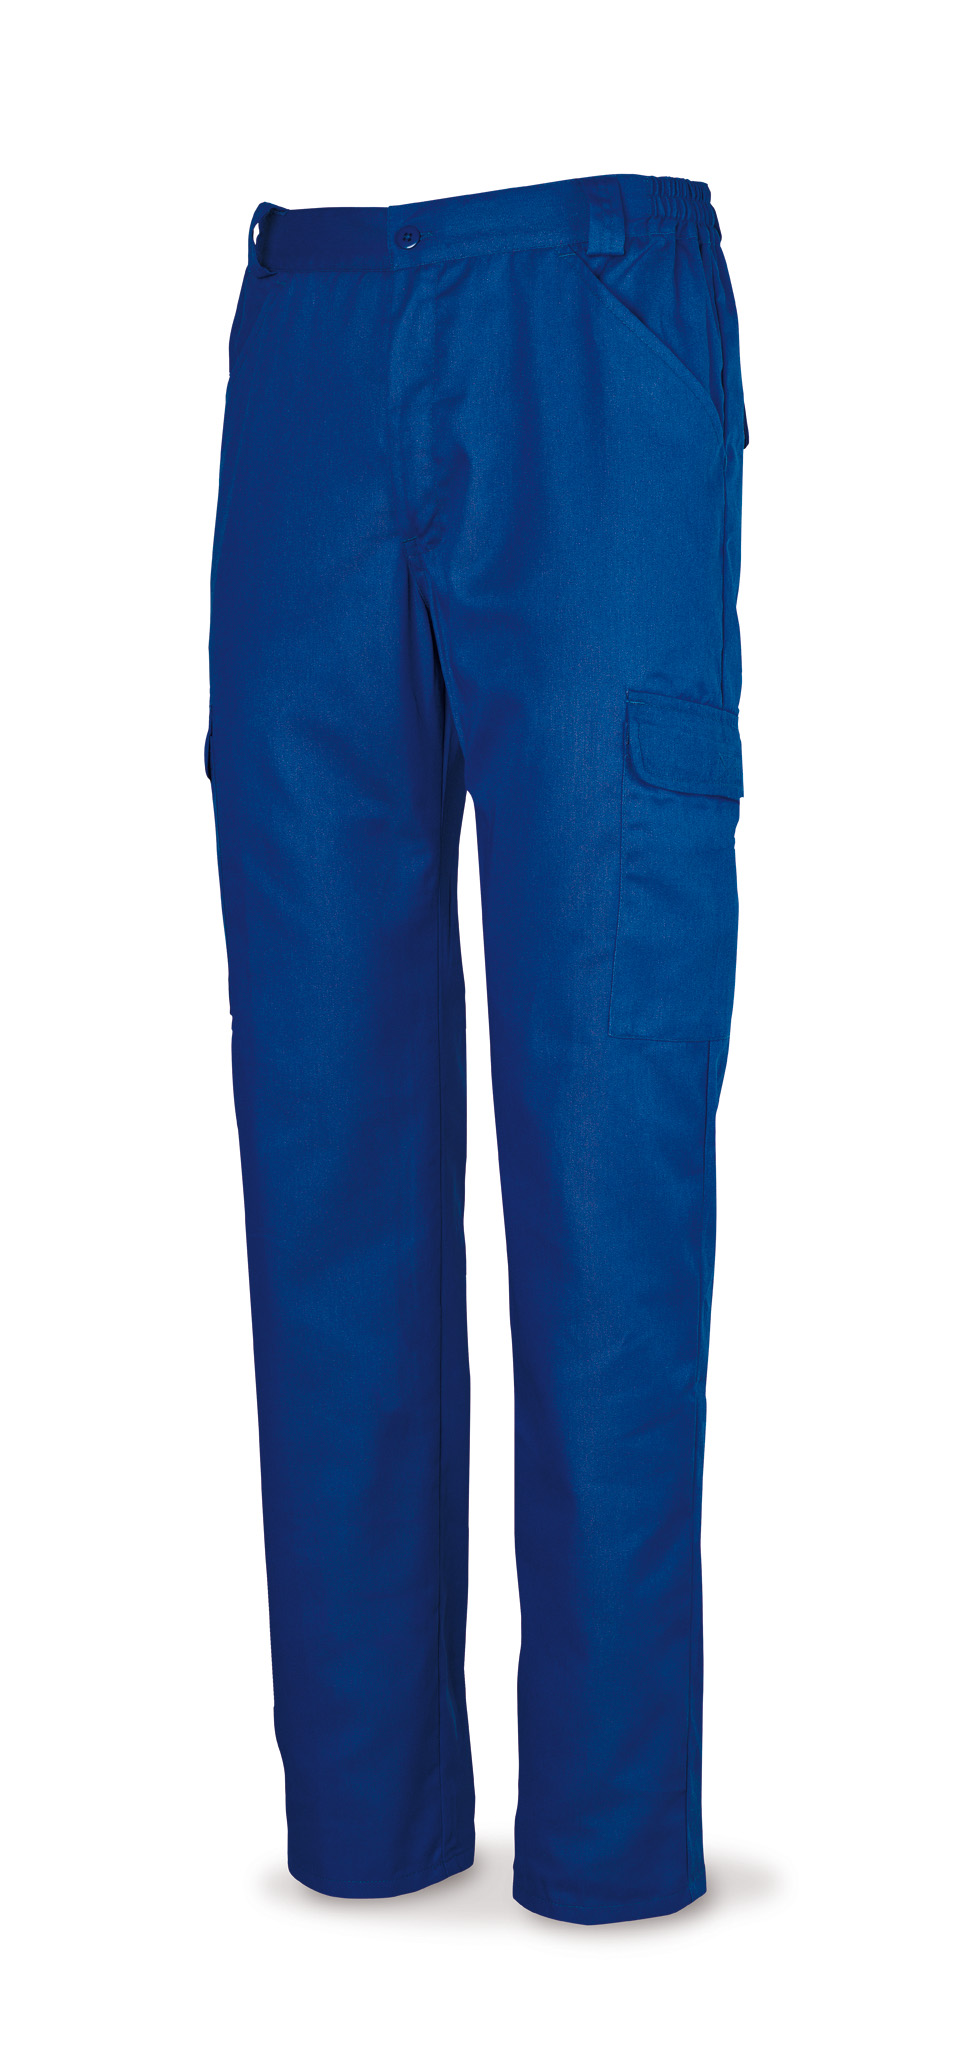 388-PE Vestuario Laboral Basic Line Calças fecho correr e ranhura. Algodão 100%. Cor azulina.